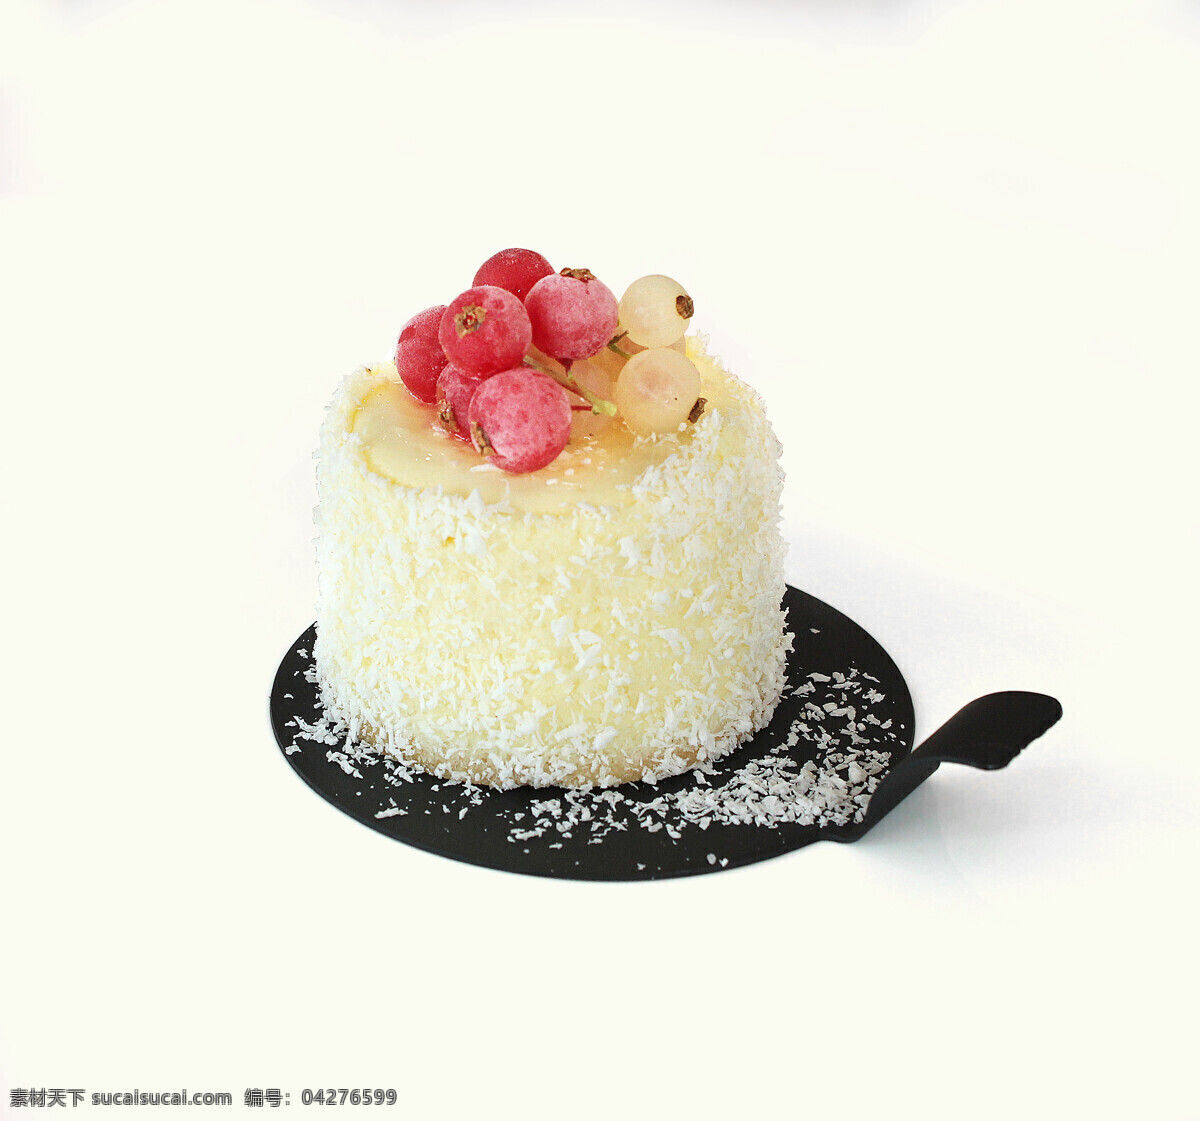 椰蓉 蛋糕 甜品 背景 海报 素材图片 食物 中药 水果 类 餐饮美食